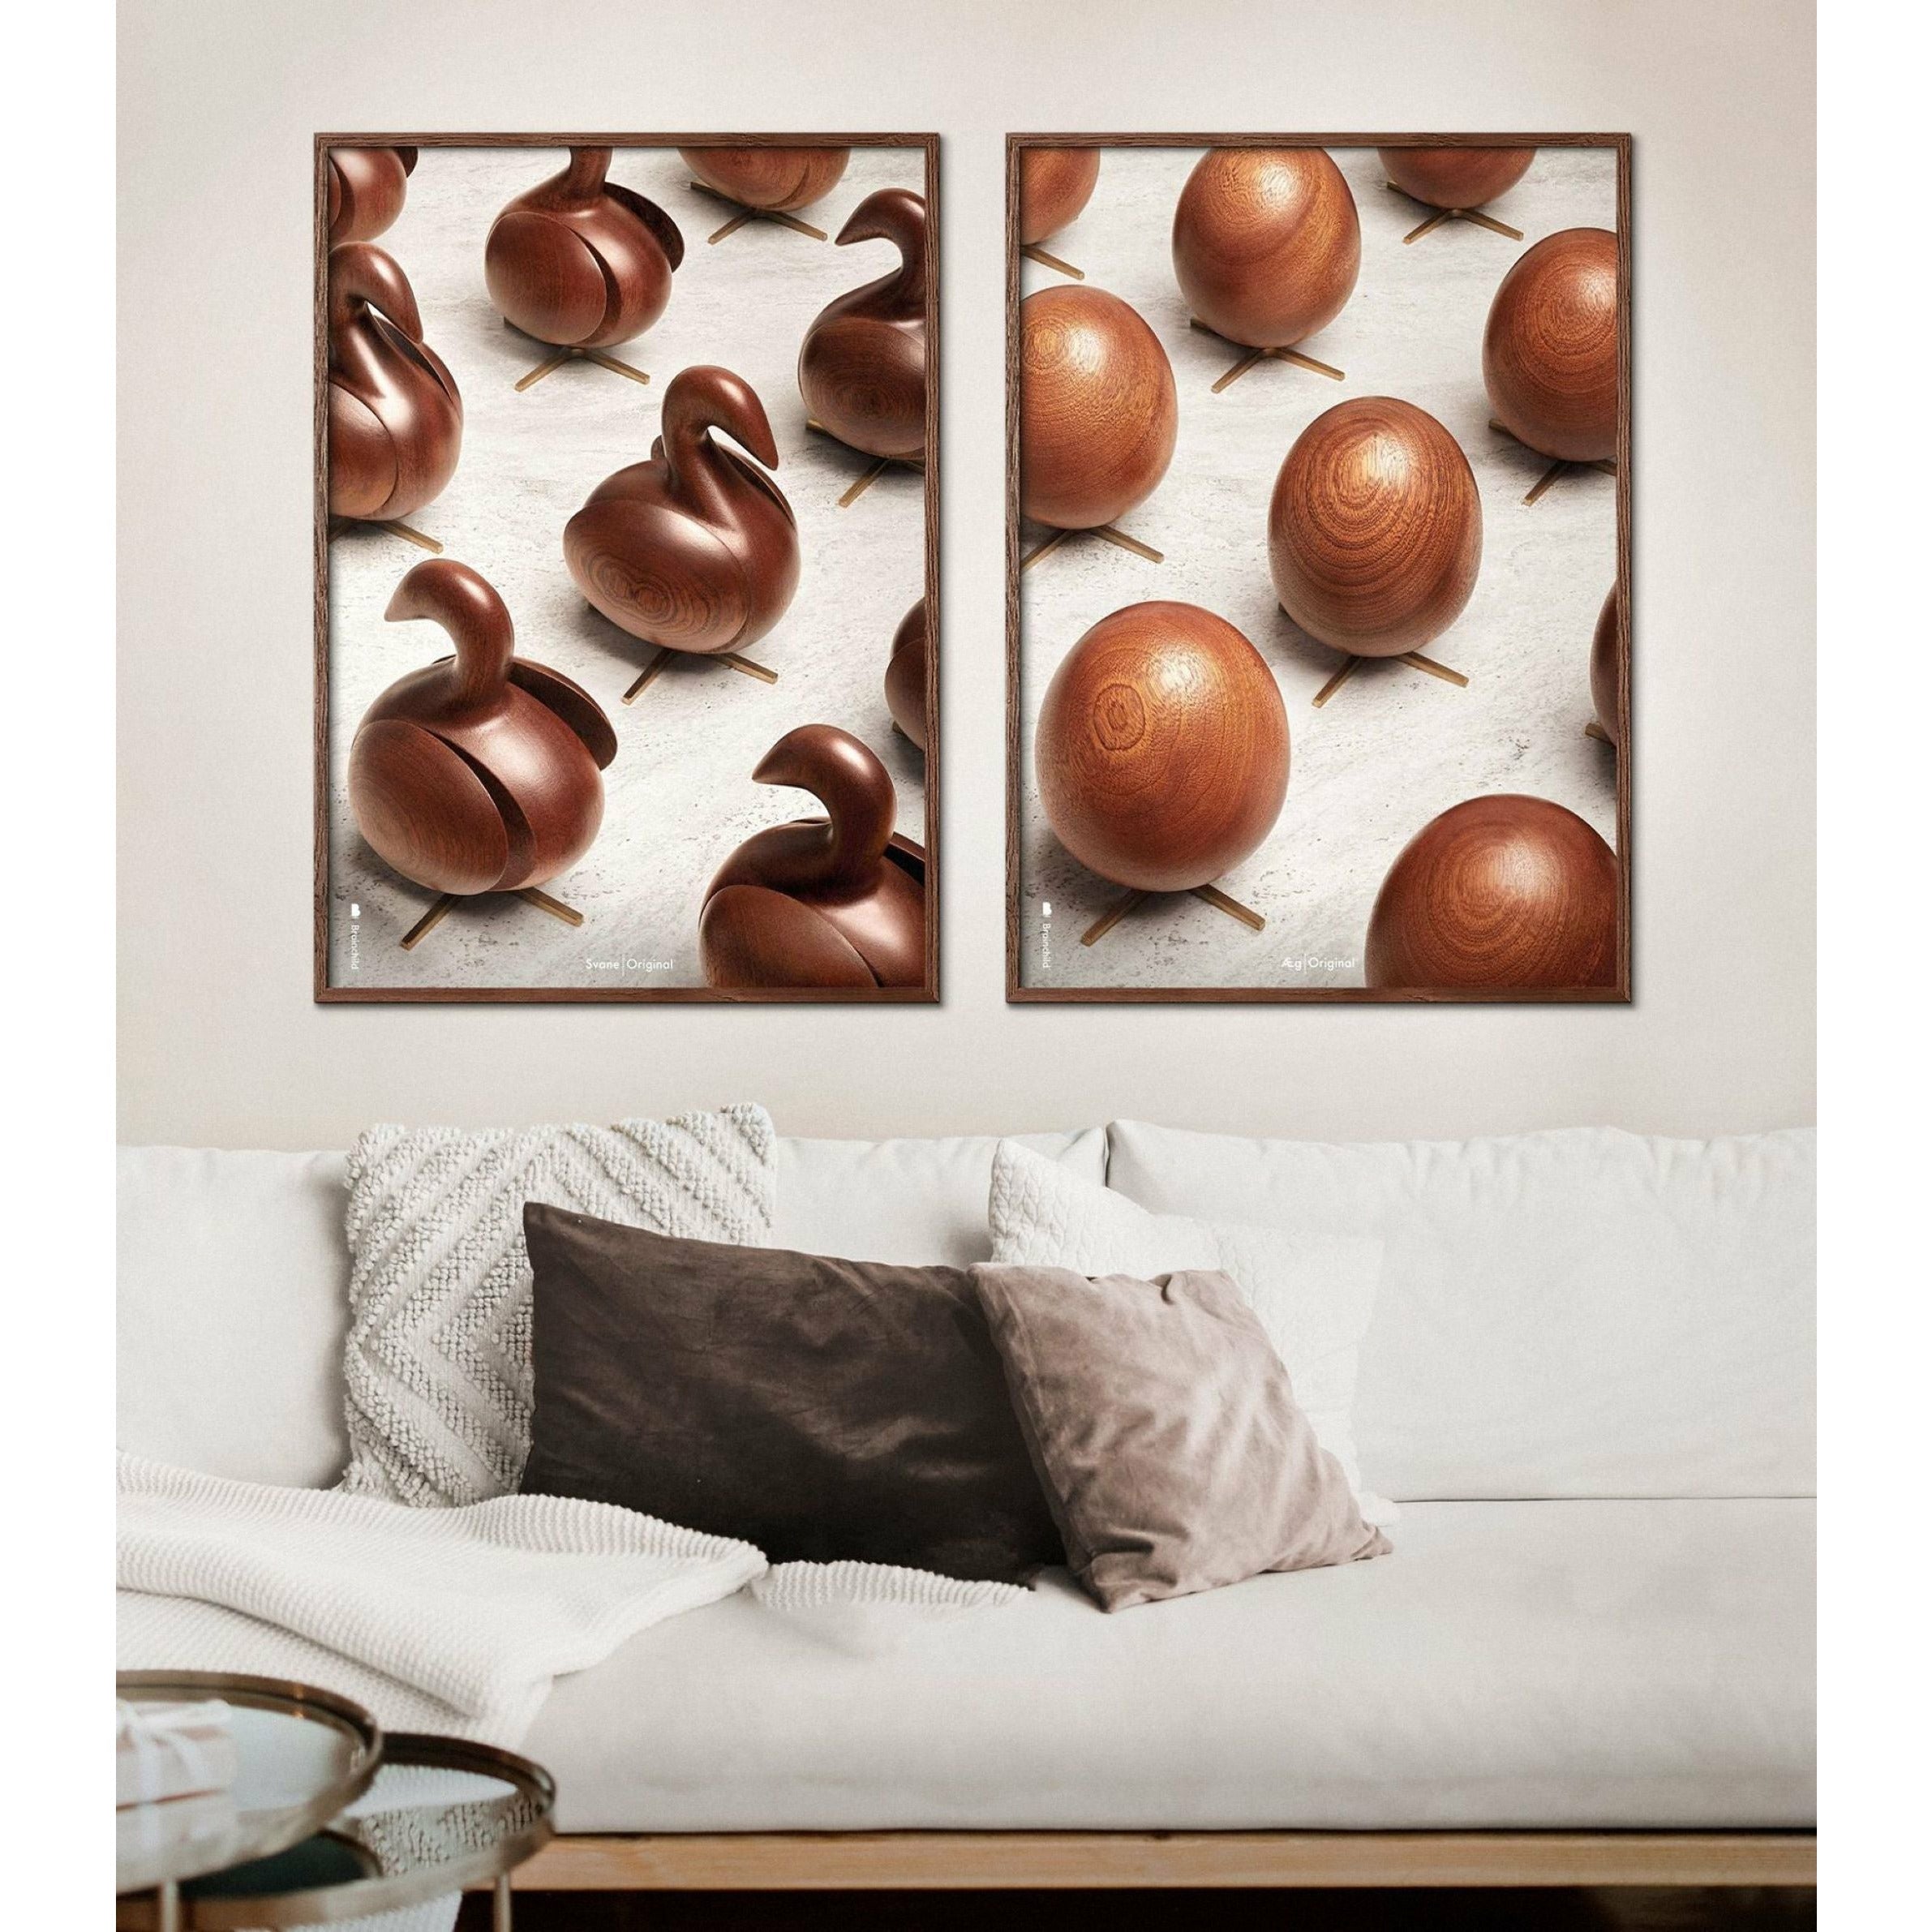 Poster per sfilata di uova di prima cosa, telaio in legno scuro, 50x70 cm